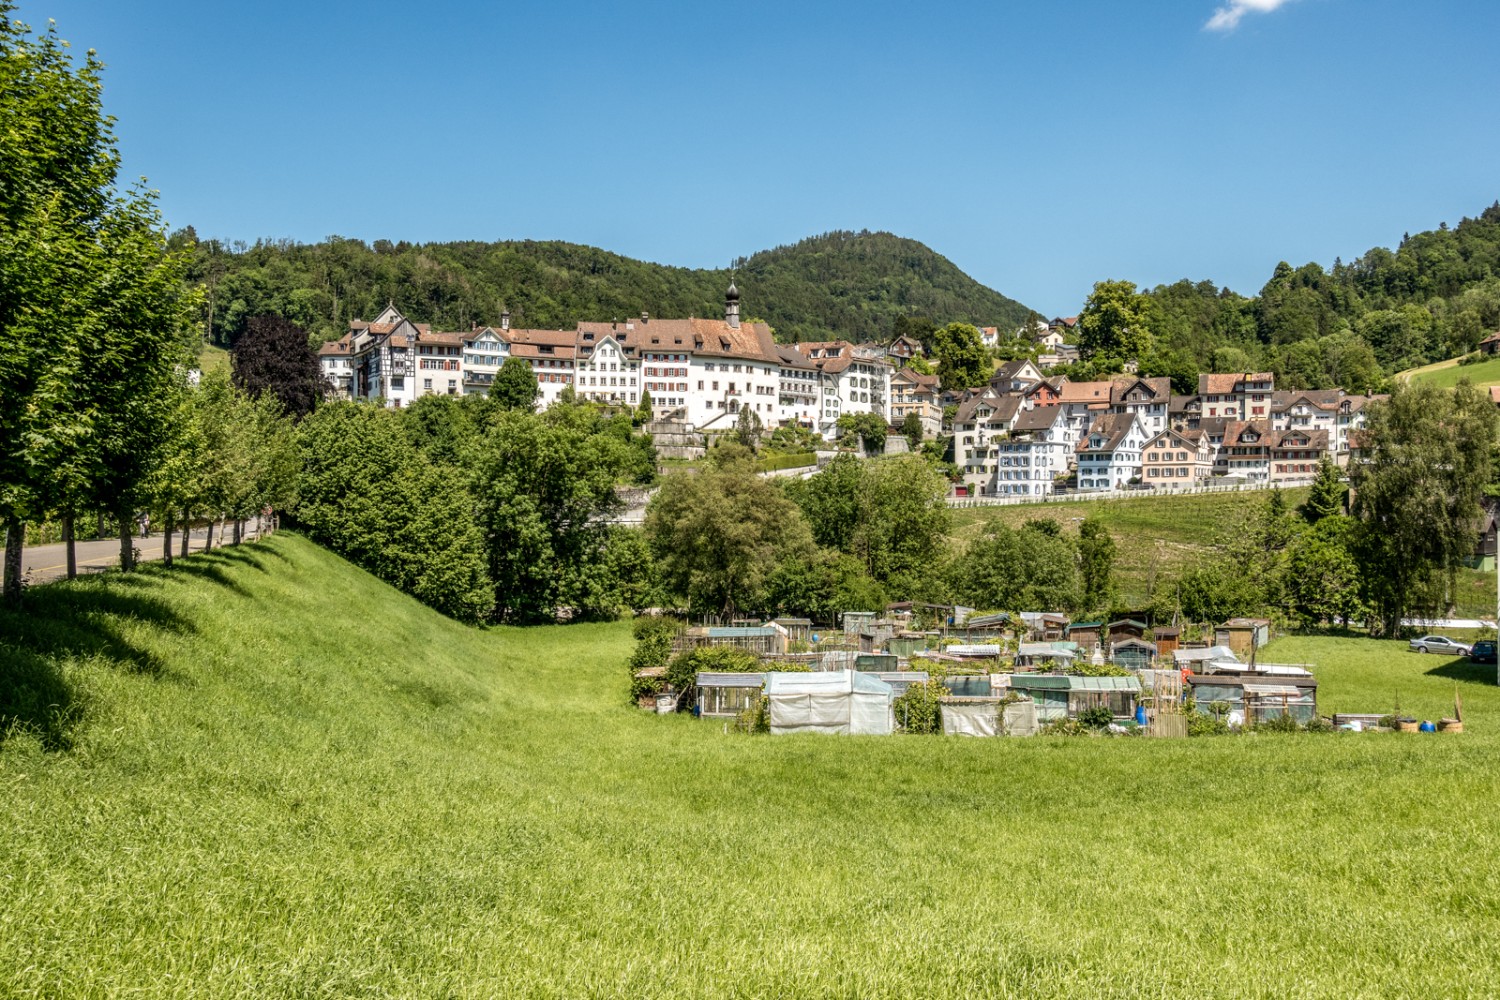 La petite ville médiévale de Lichtensteig forme une apparition pittoresque. Photo: Fredy Joss